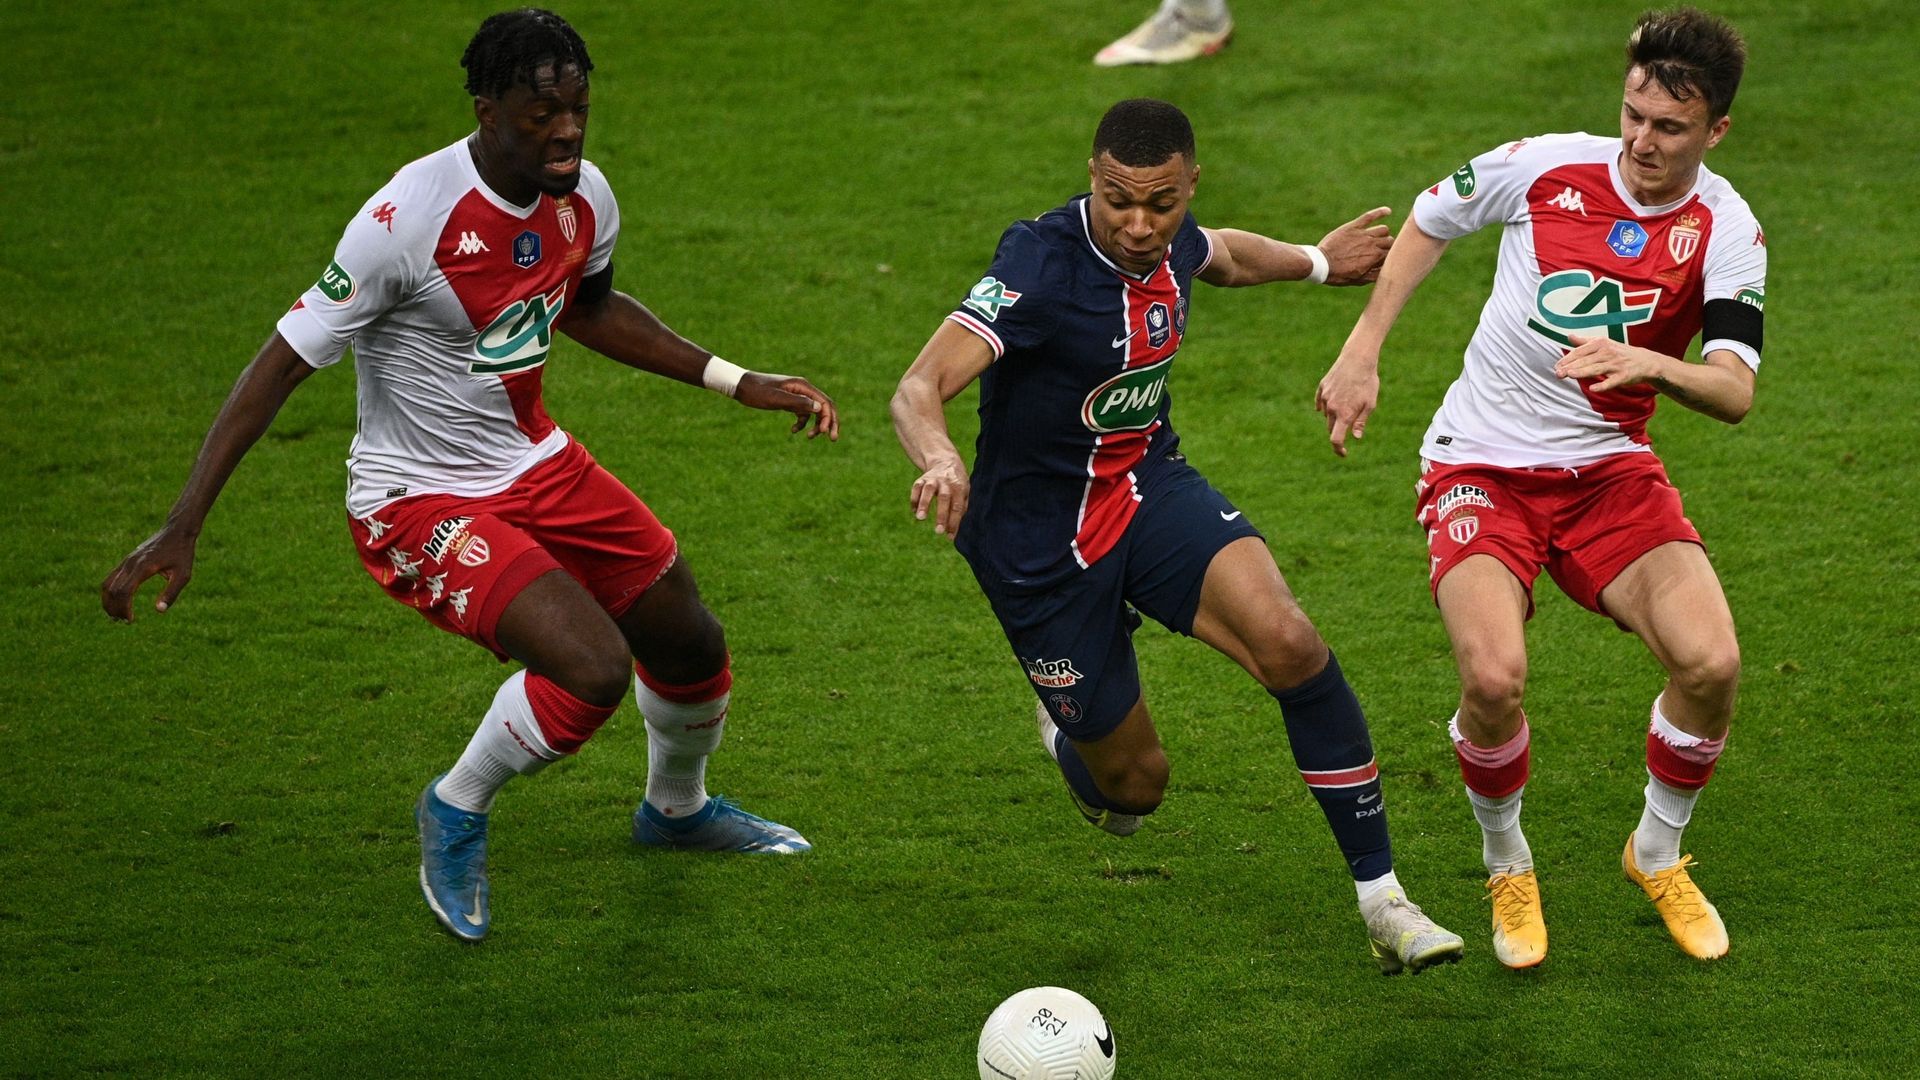 Le PSG a remporté la Coupe de France de football mercredi à Paris, dans un stade de France sans spectateurs. Les Parisiens l’ont emporté face à Monaco 2 buts à 0 (mi-temps : 1-0).